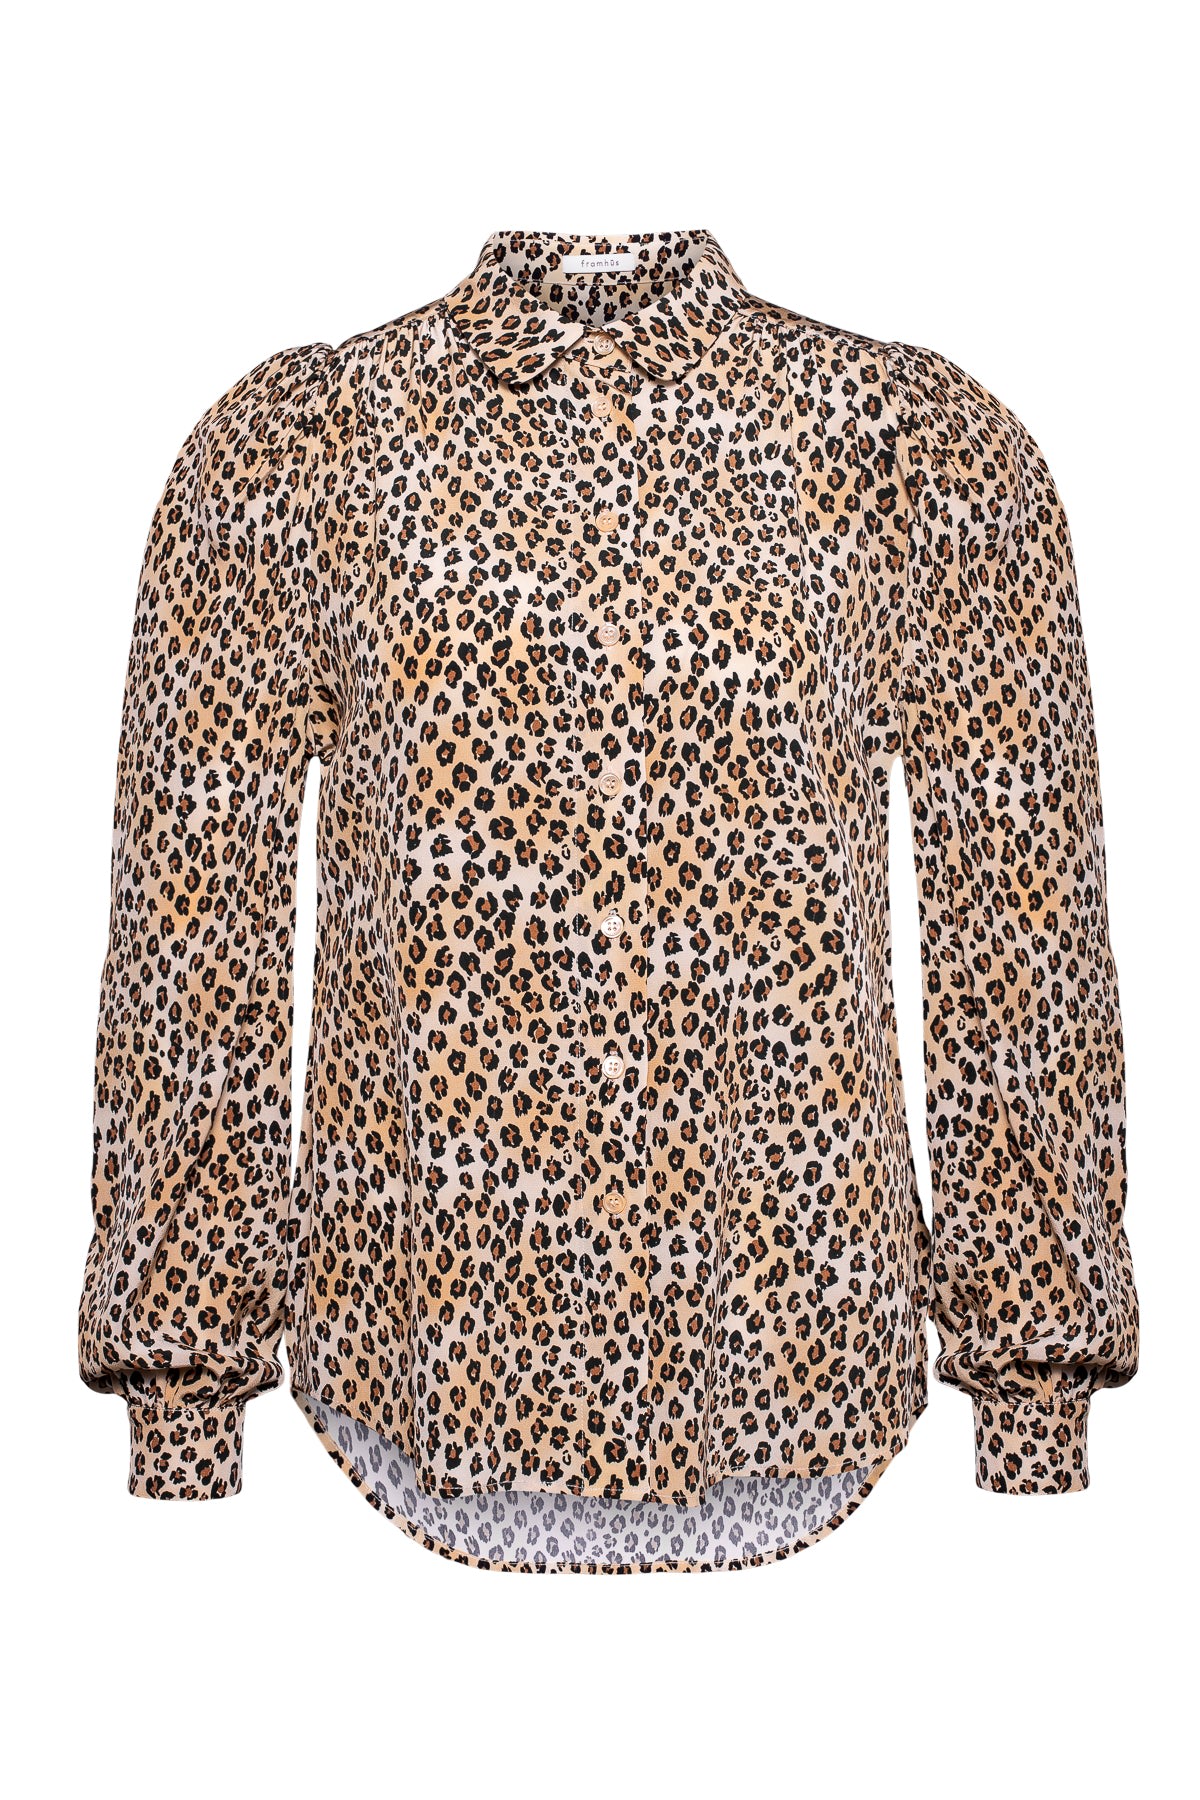 Women’s Neutrals Harper Silk Blouse - Leopard Extra Small Framhūs